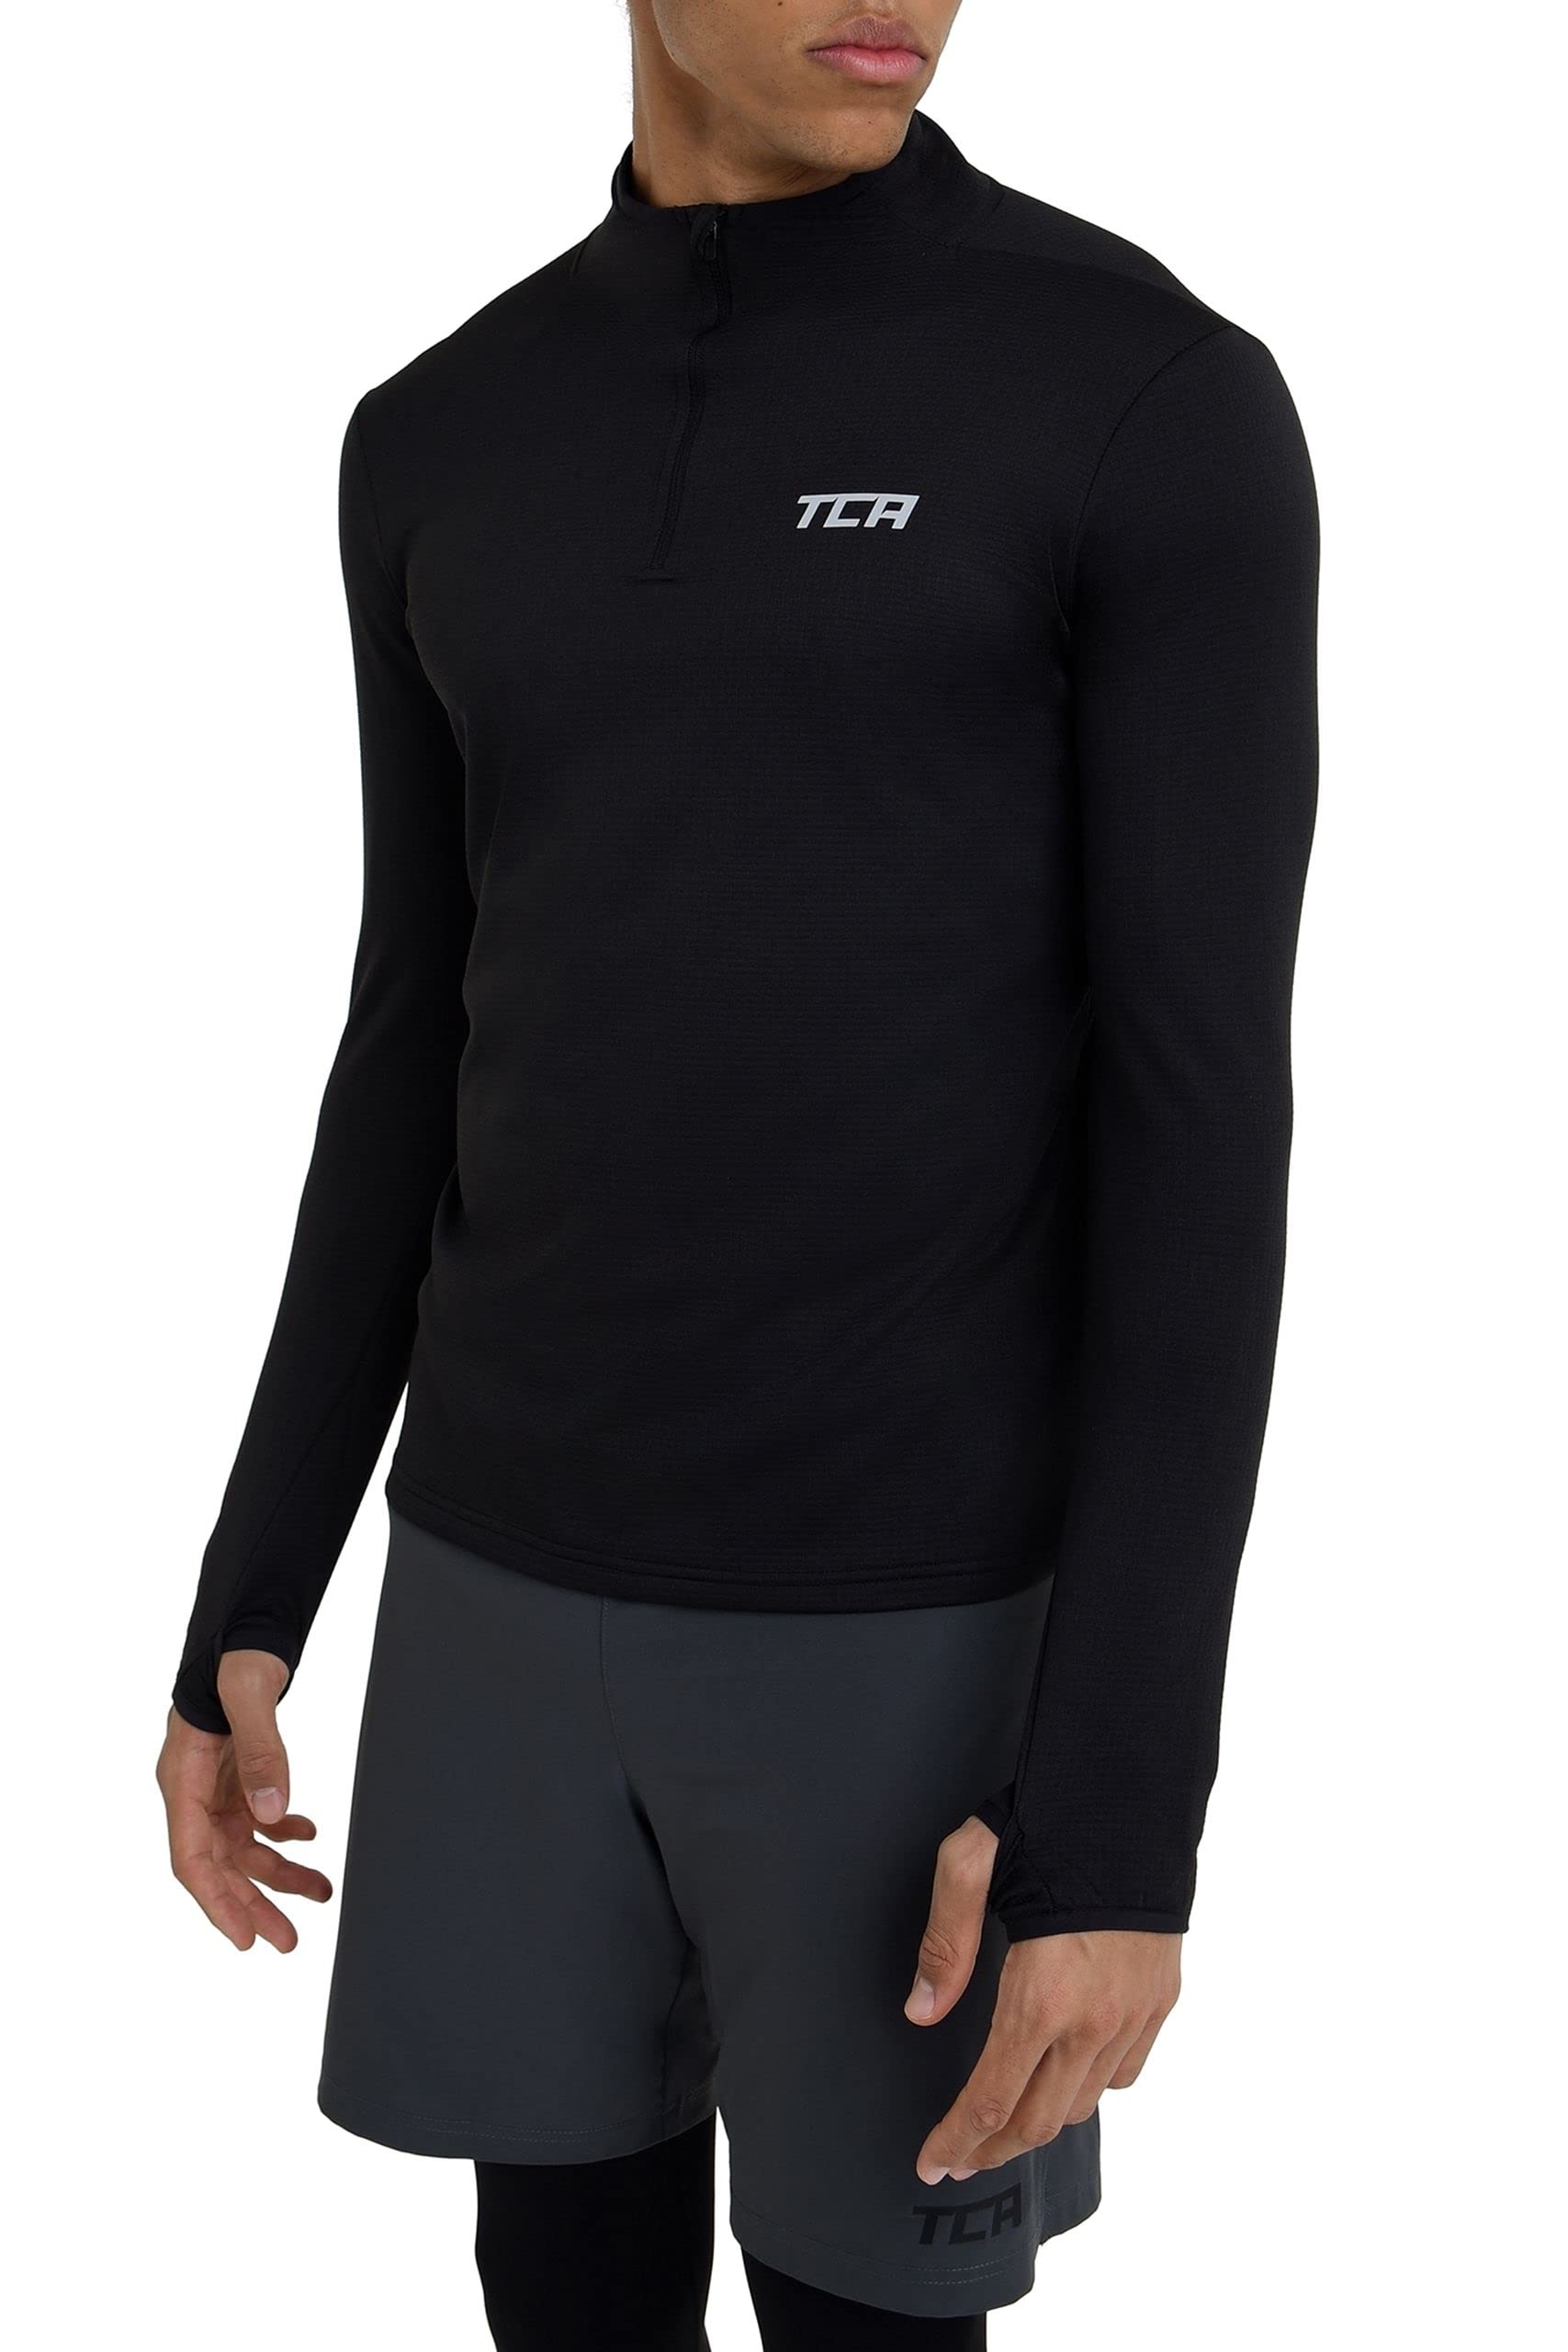 TCA Herren Cloud Fleece mit Brust Reißveschluss - Thermo Sporttop Laufshirt - Schwarz, L